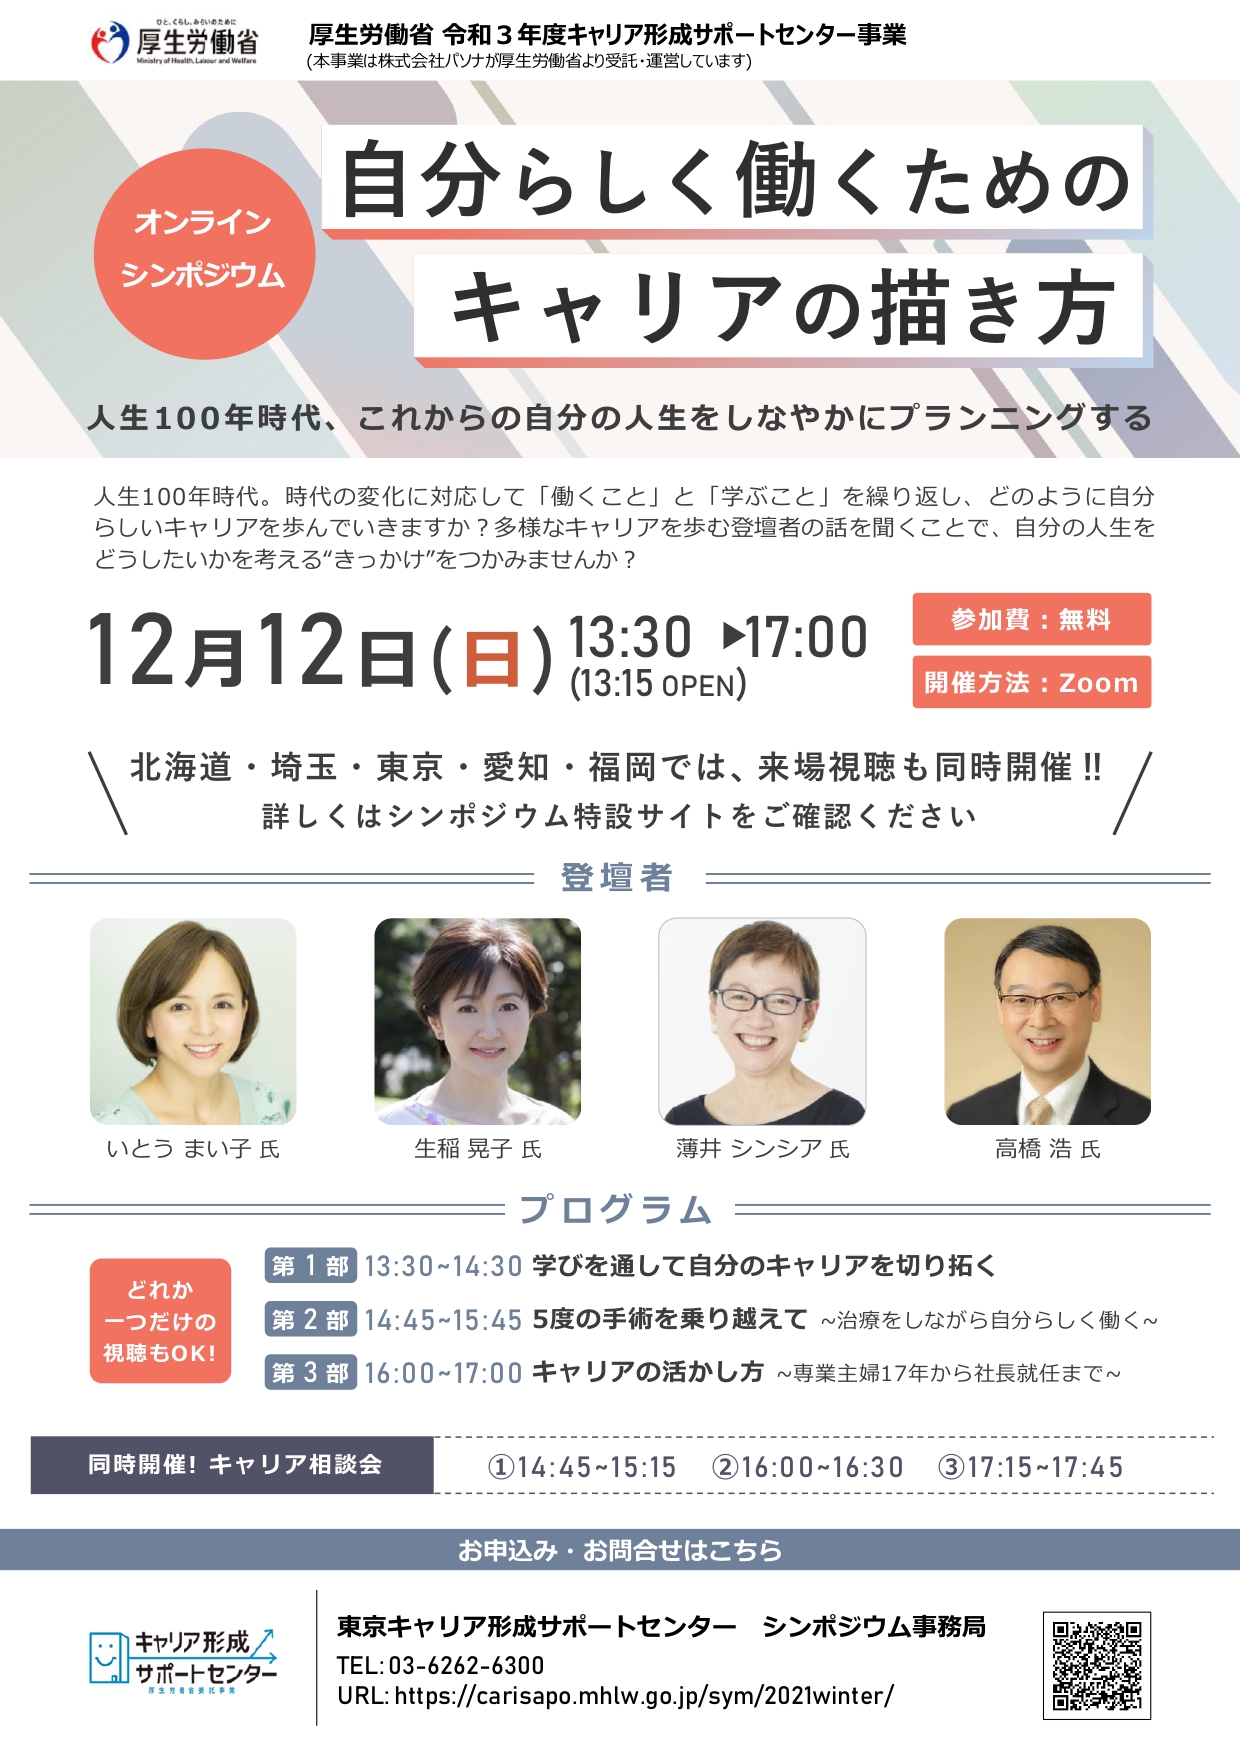 【12月12日】シンポジウム「自分らしく働くためのキャリアの描き方」の開催について